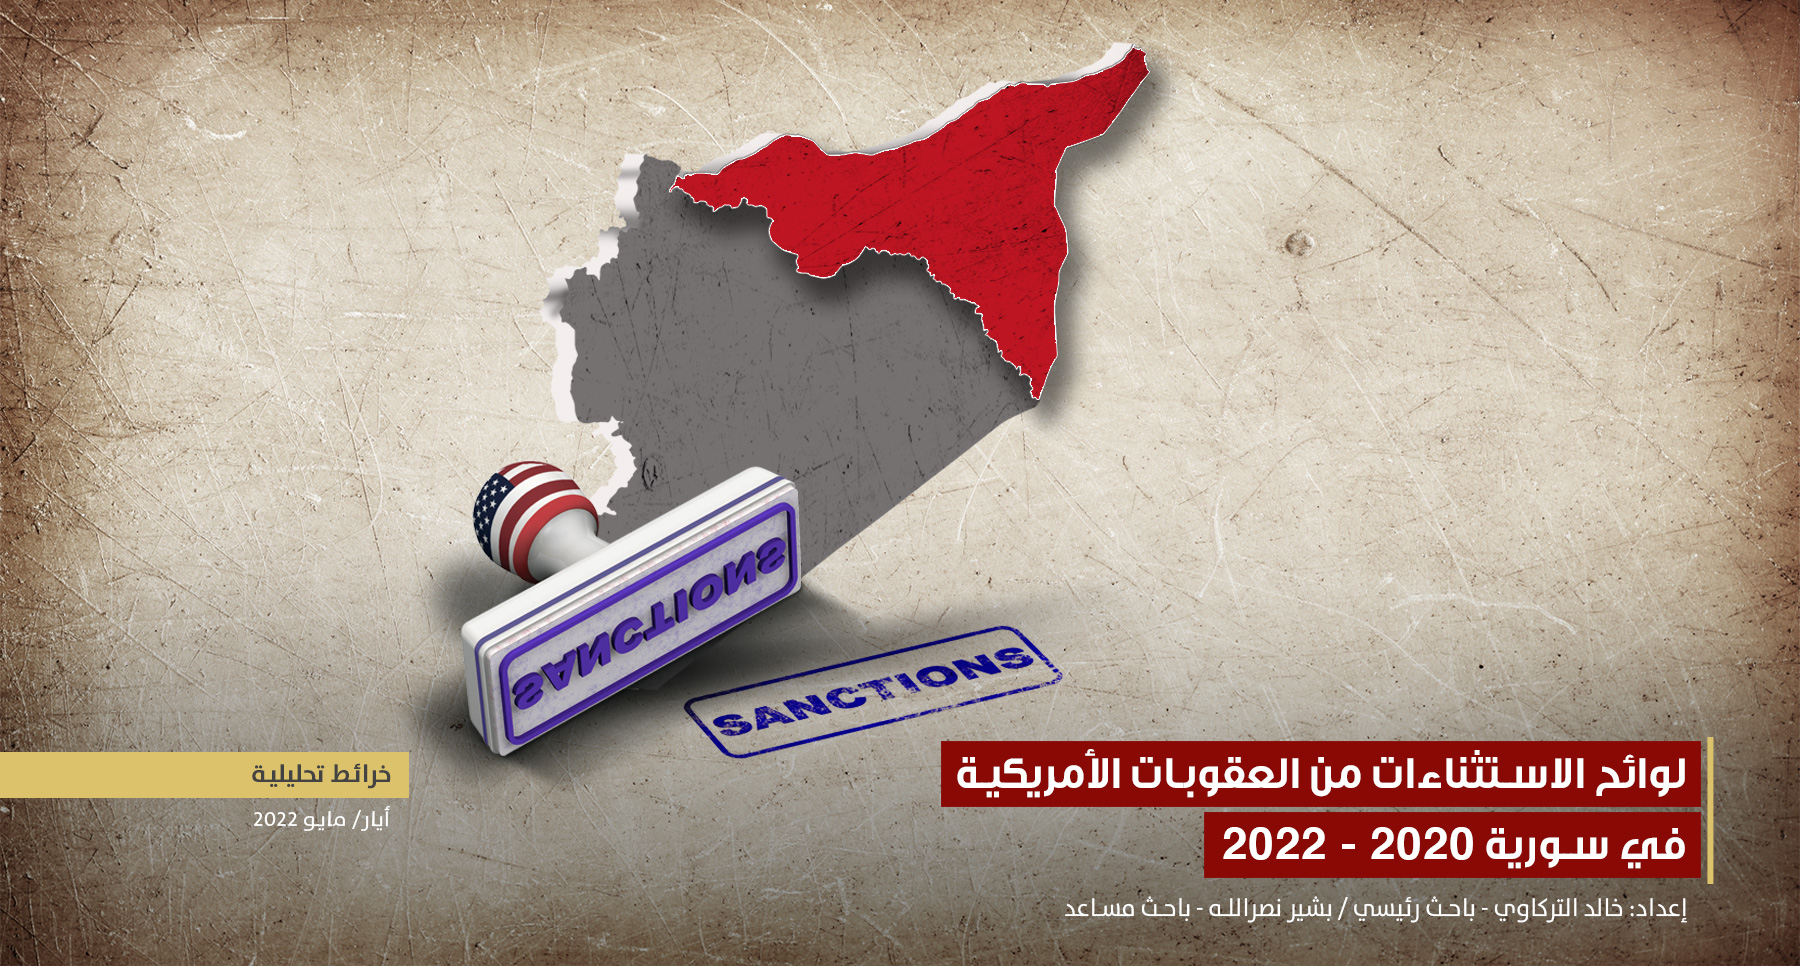 لوائح الاستثناءات من العقوبات الأمريكية في سورية 2020 – 2022